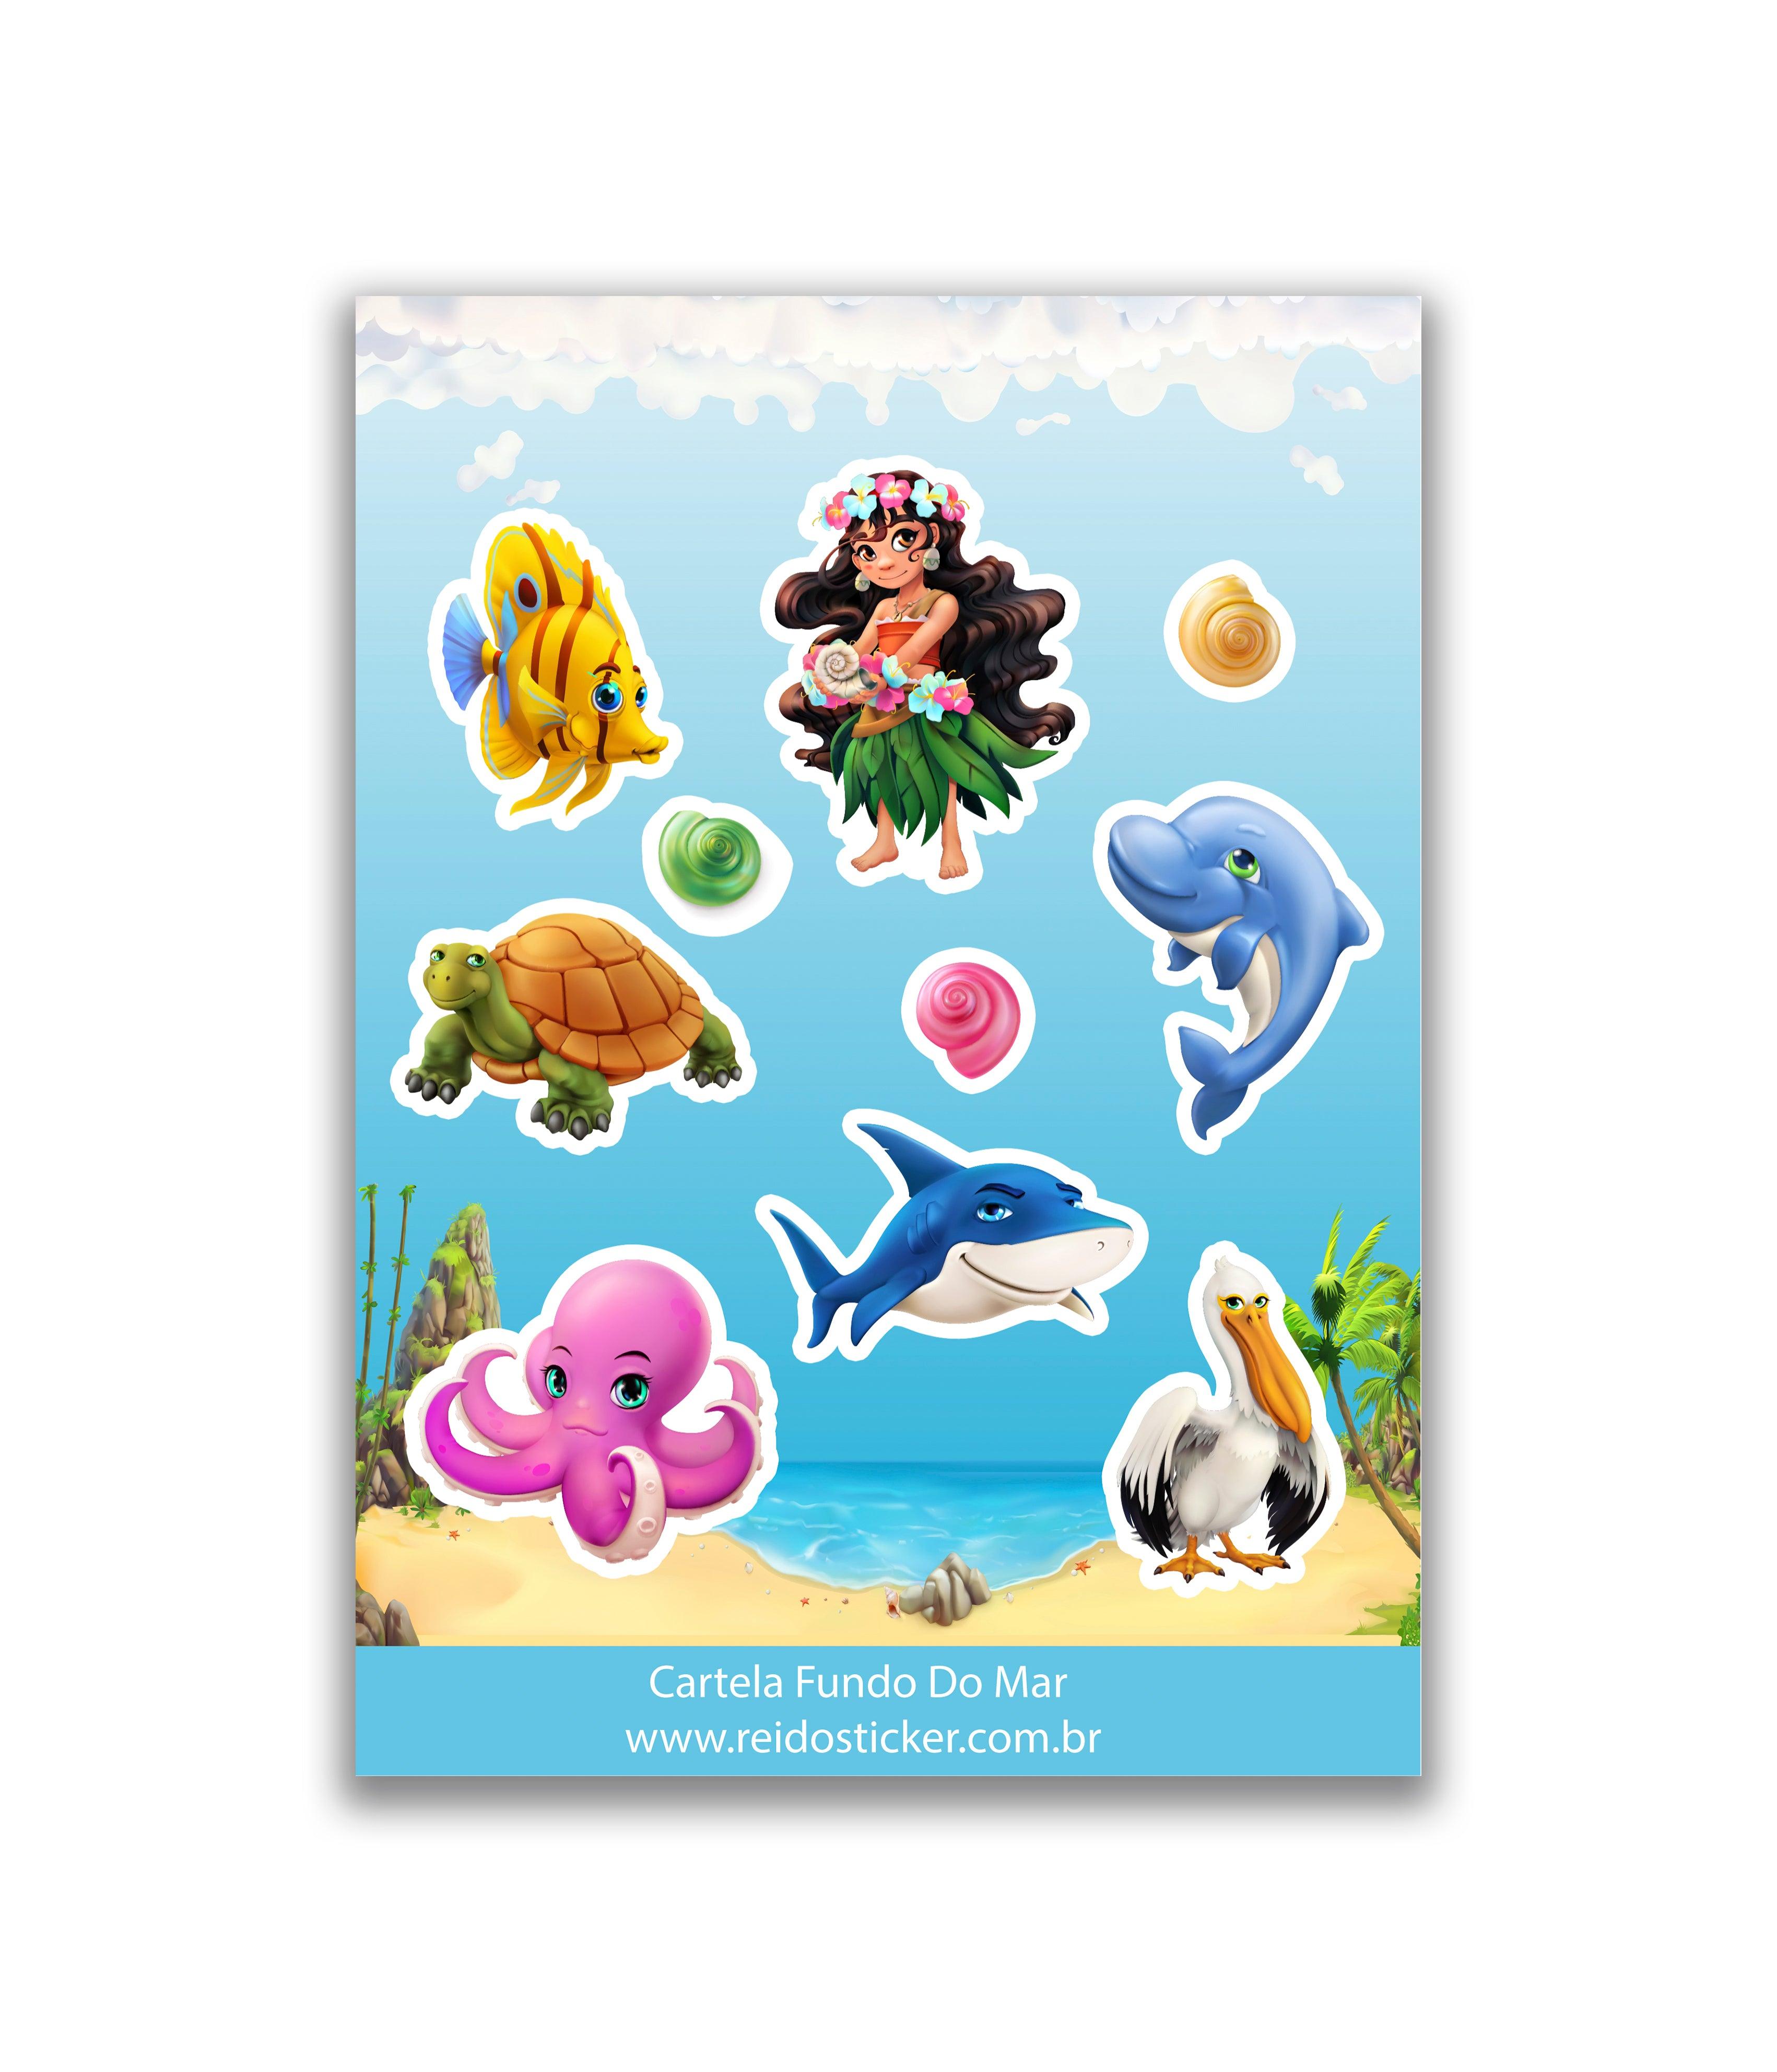 Cartela Fundo do Mar - Rei do Sticker